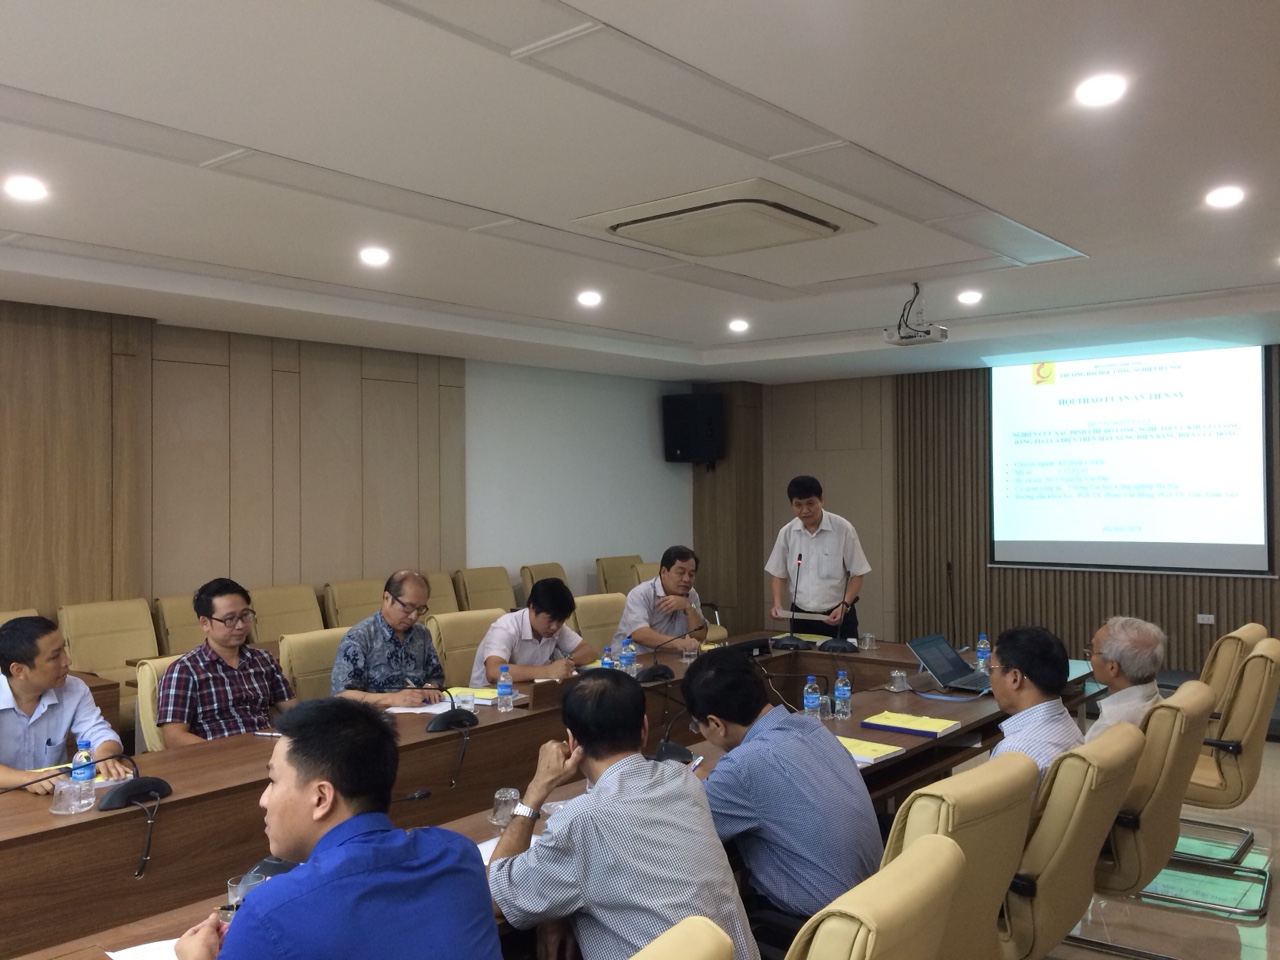 Ngày 18/8/2019 Trung tâm đào tạo Sau đại học phối hợp với Khoa Co khí tổ chức Hội thảo khoa học cho NCS Nguyễn Văn Đức, chuyên ngành Cơ khí khóa 1.